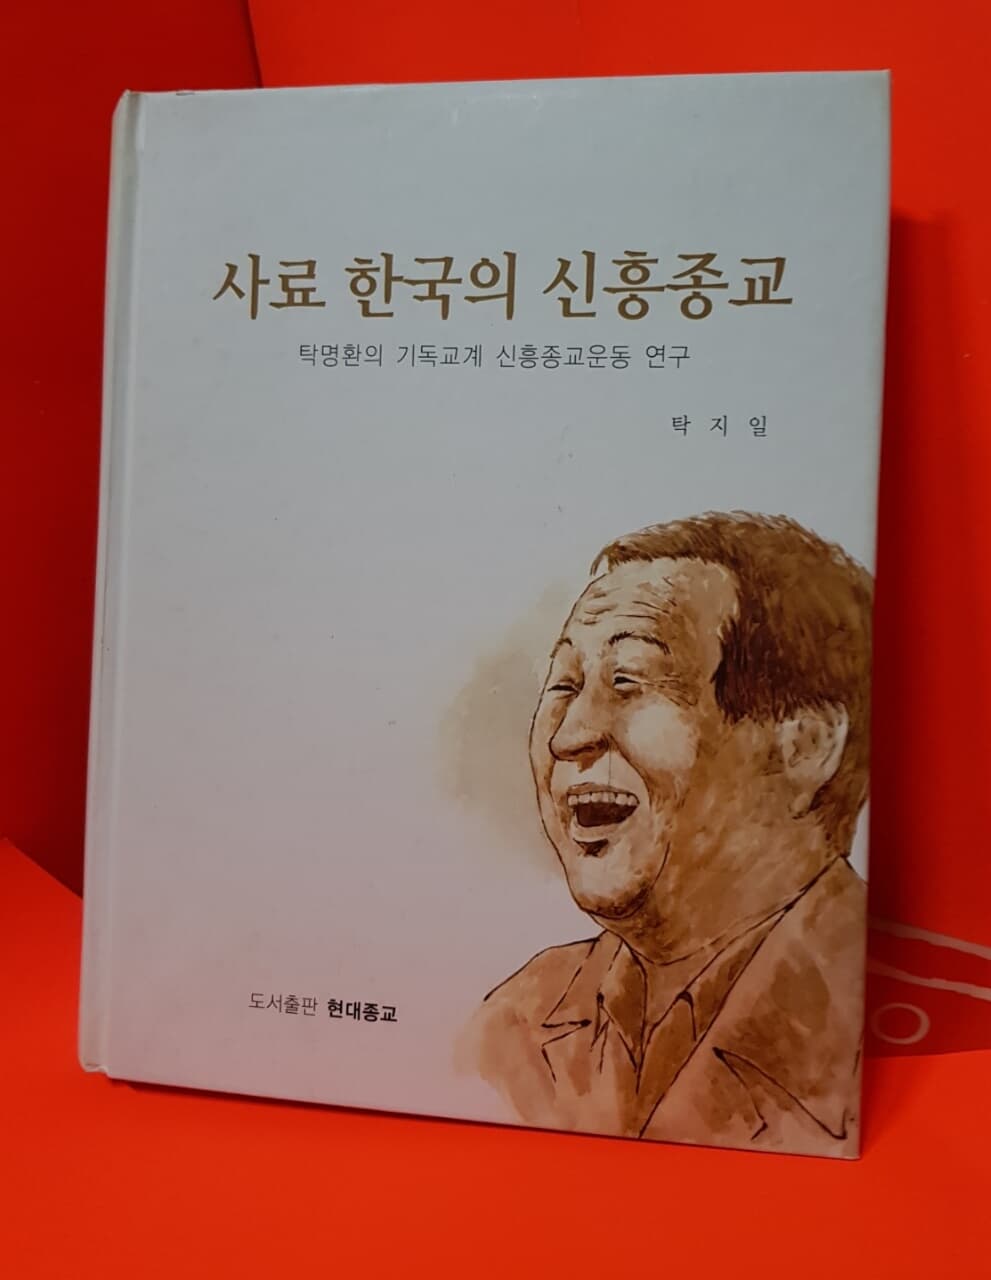 사료 한국의 신흥종교: 탁명환의 기독교계 신흥종교운동 연구 